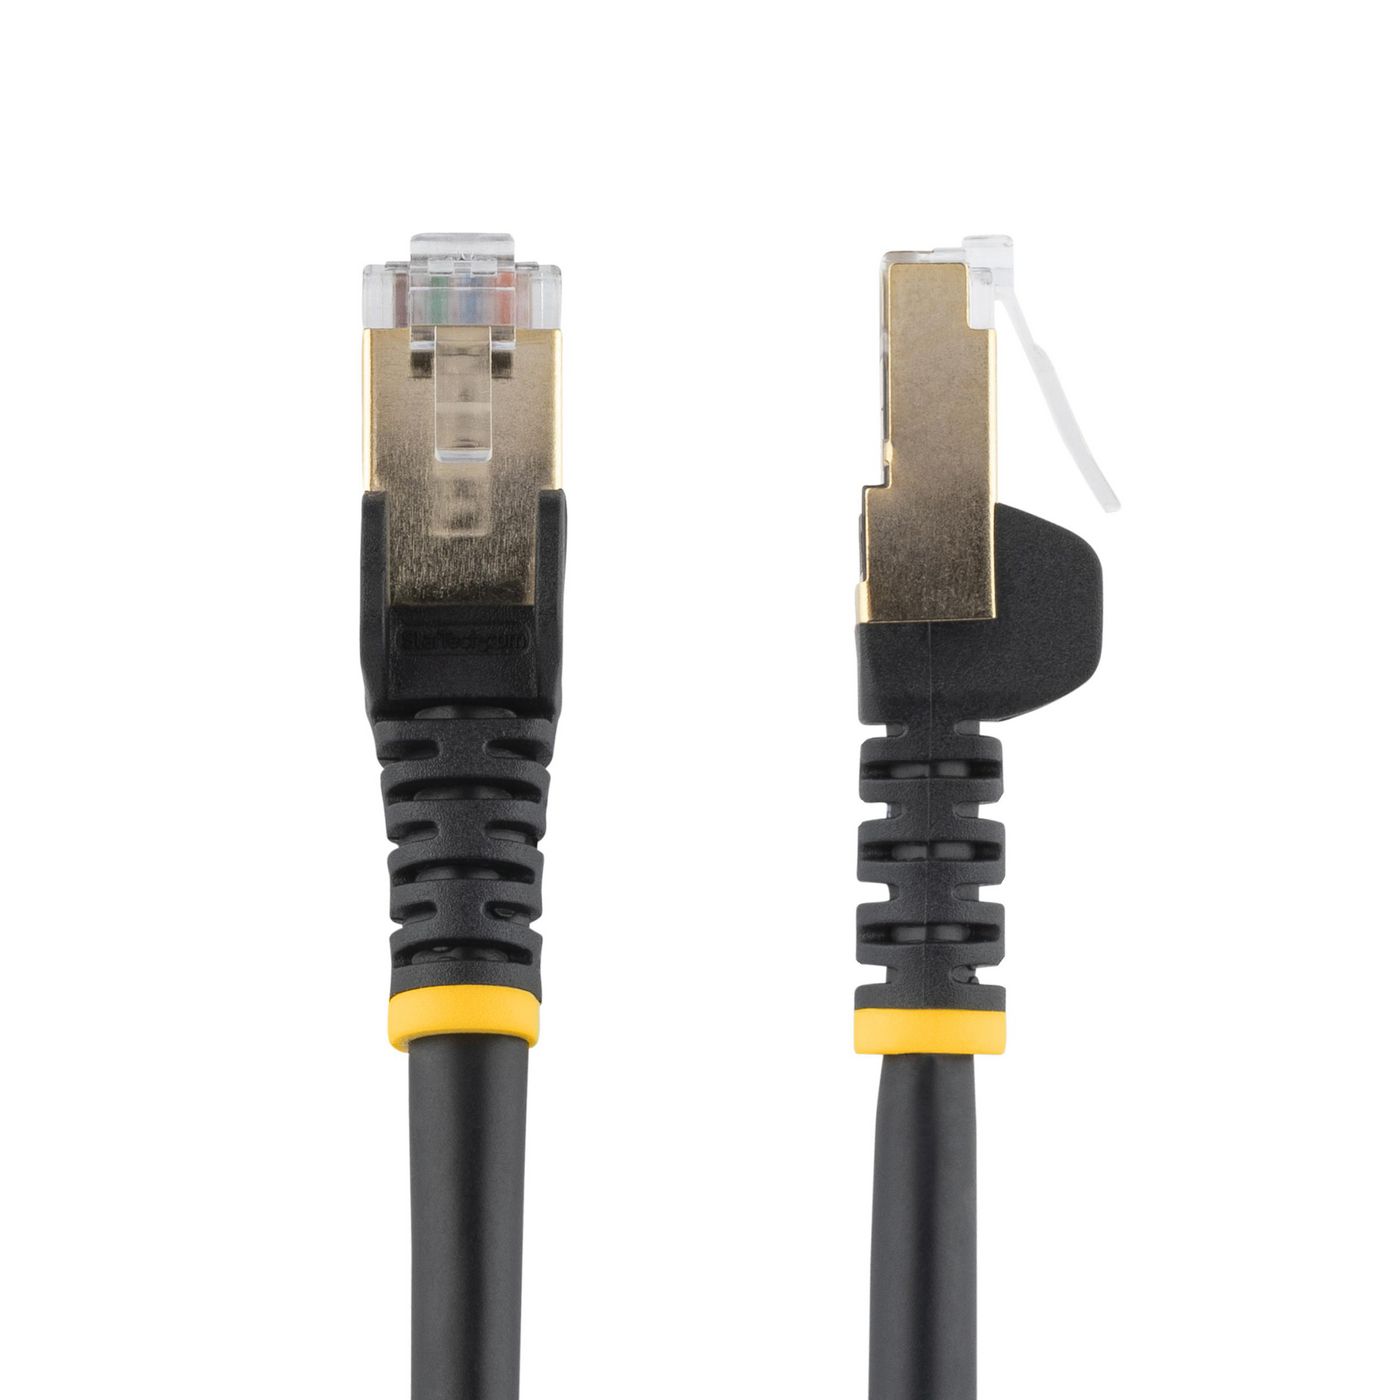 STARTECH.COM 3m Cat6a Ethernet Kabel - geschirmt (STP) - Cat6a Netzwerkkabel - Cat6a Patchkabel - Ca